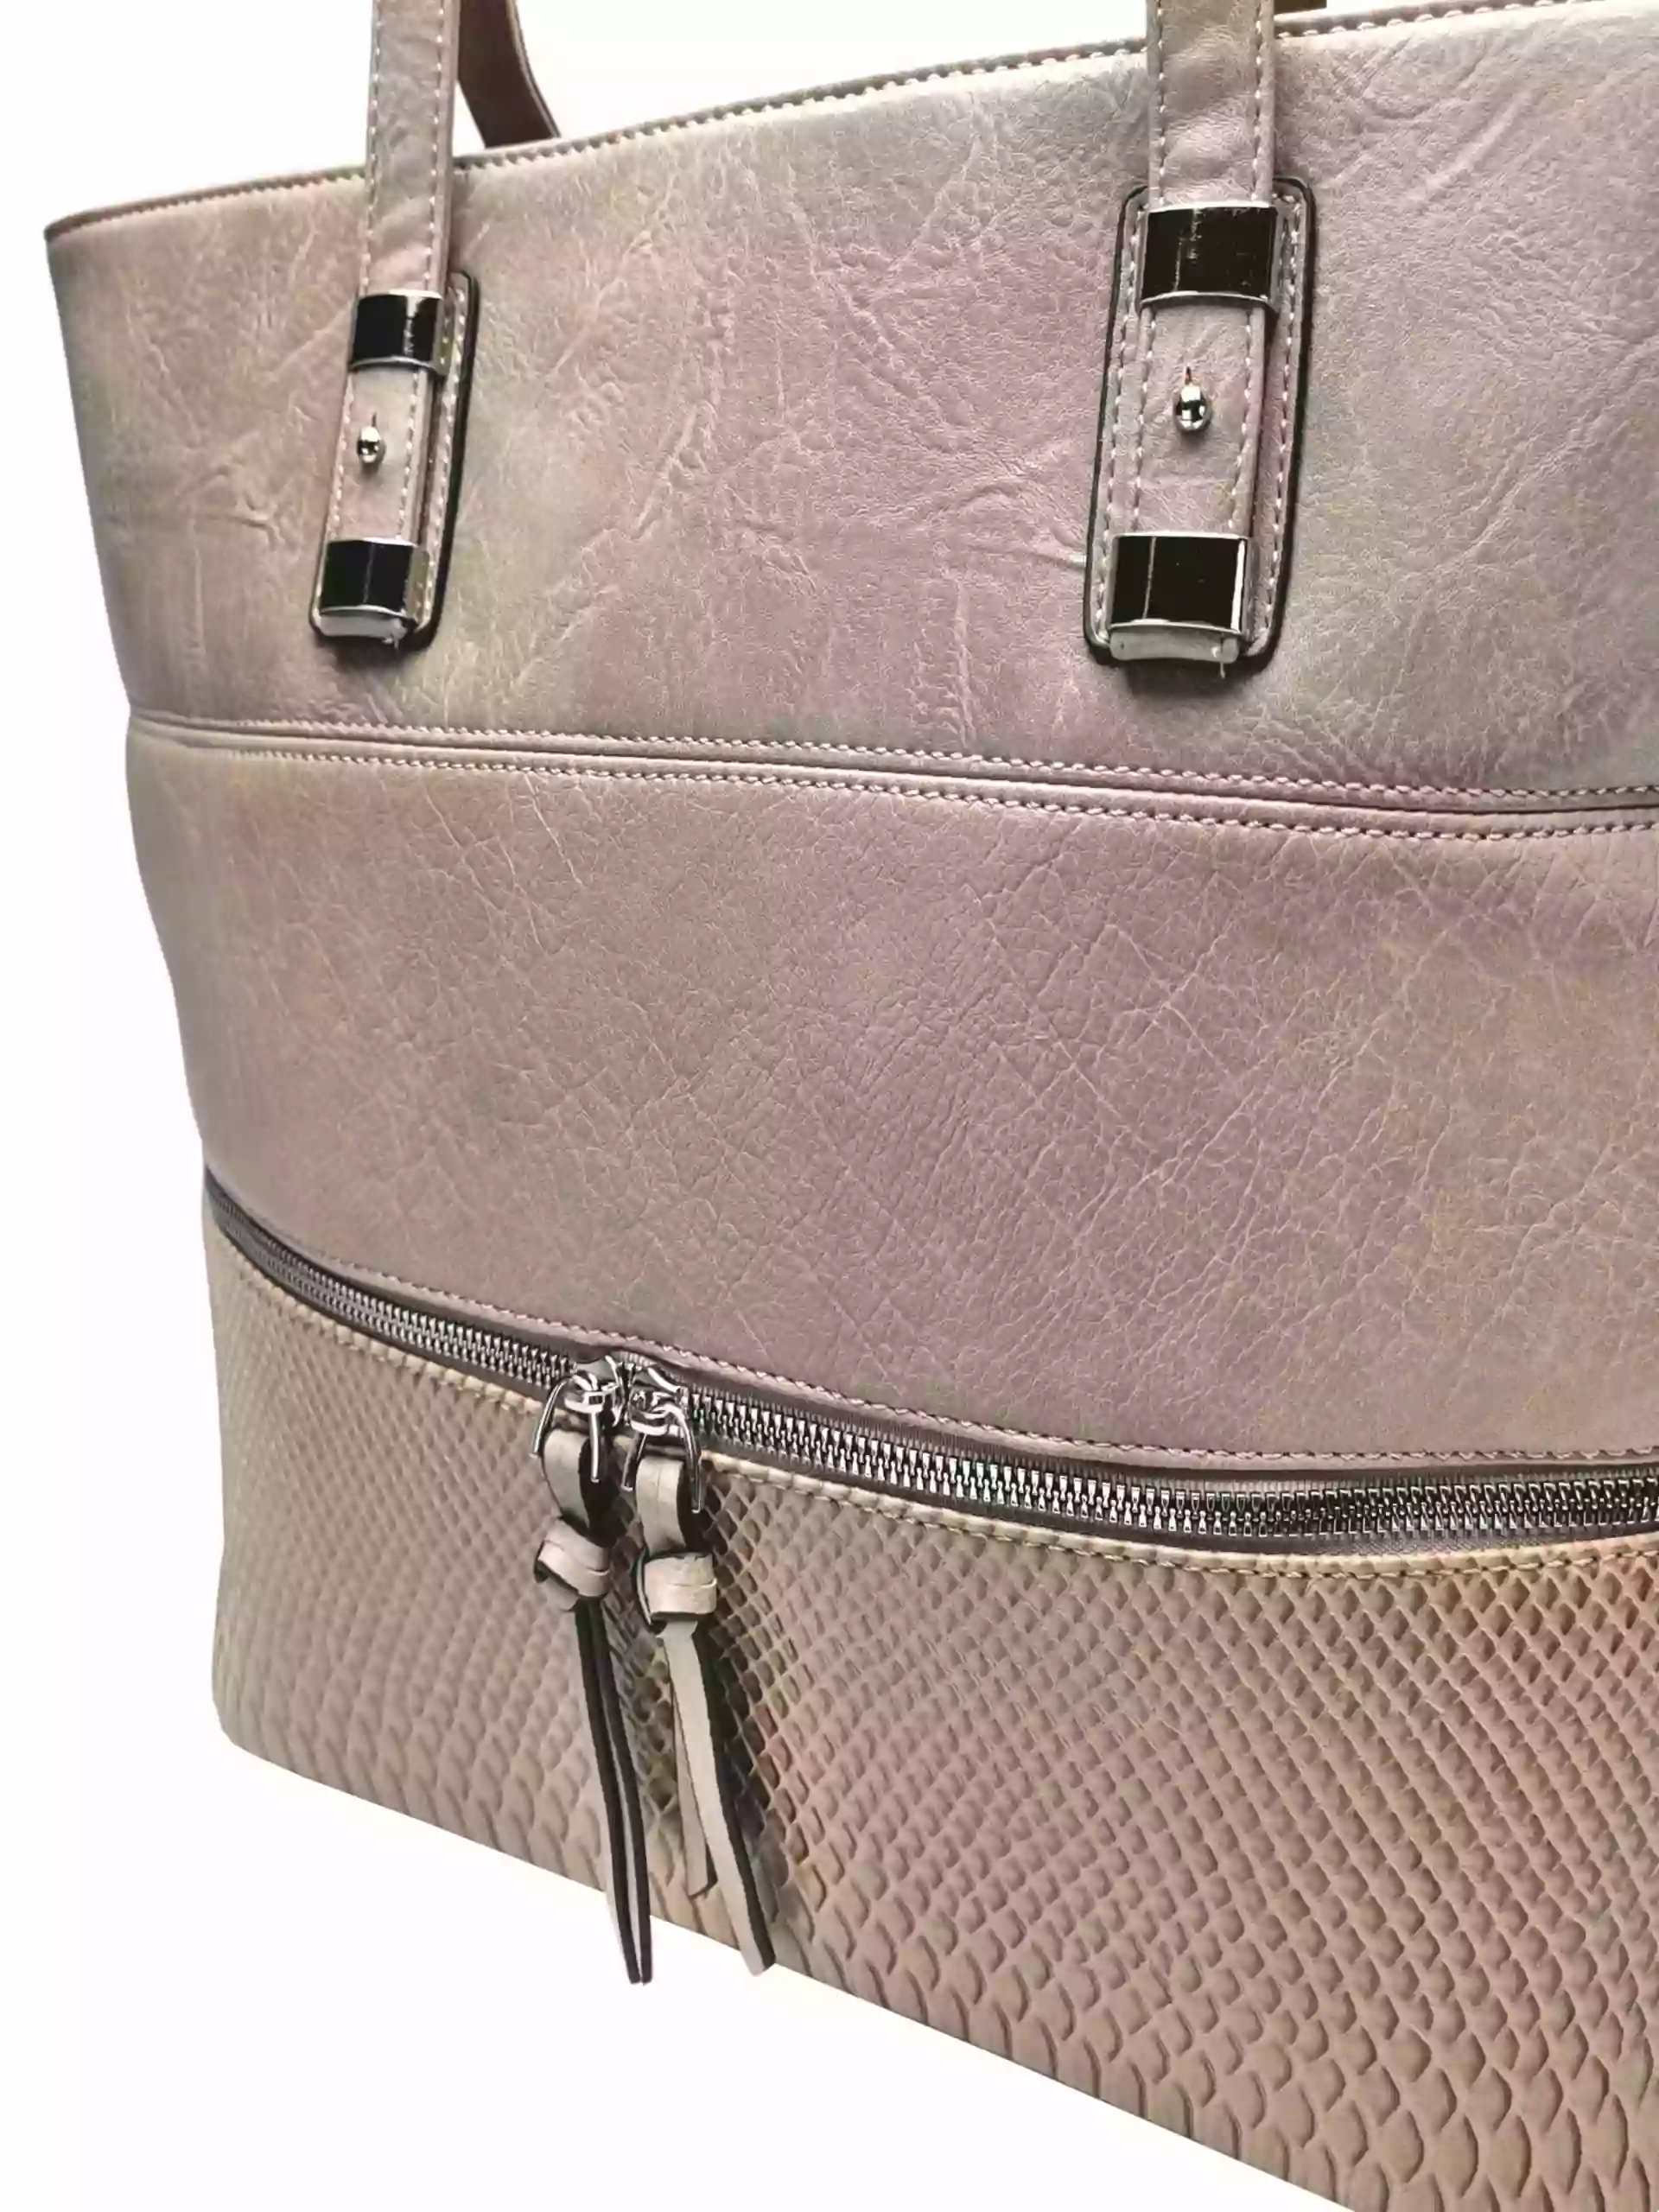 Světle hnědá kabelka přes rameno s kapsou, Tapple, H22091, detail kabelky